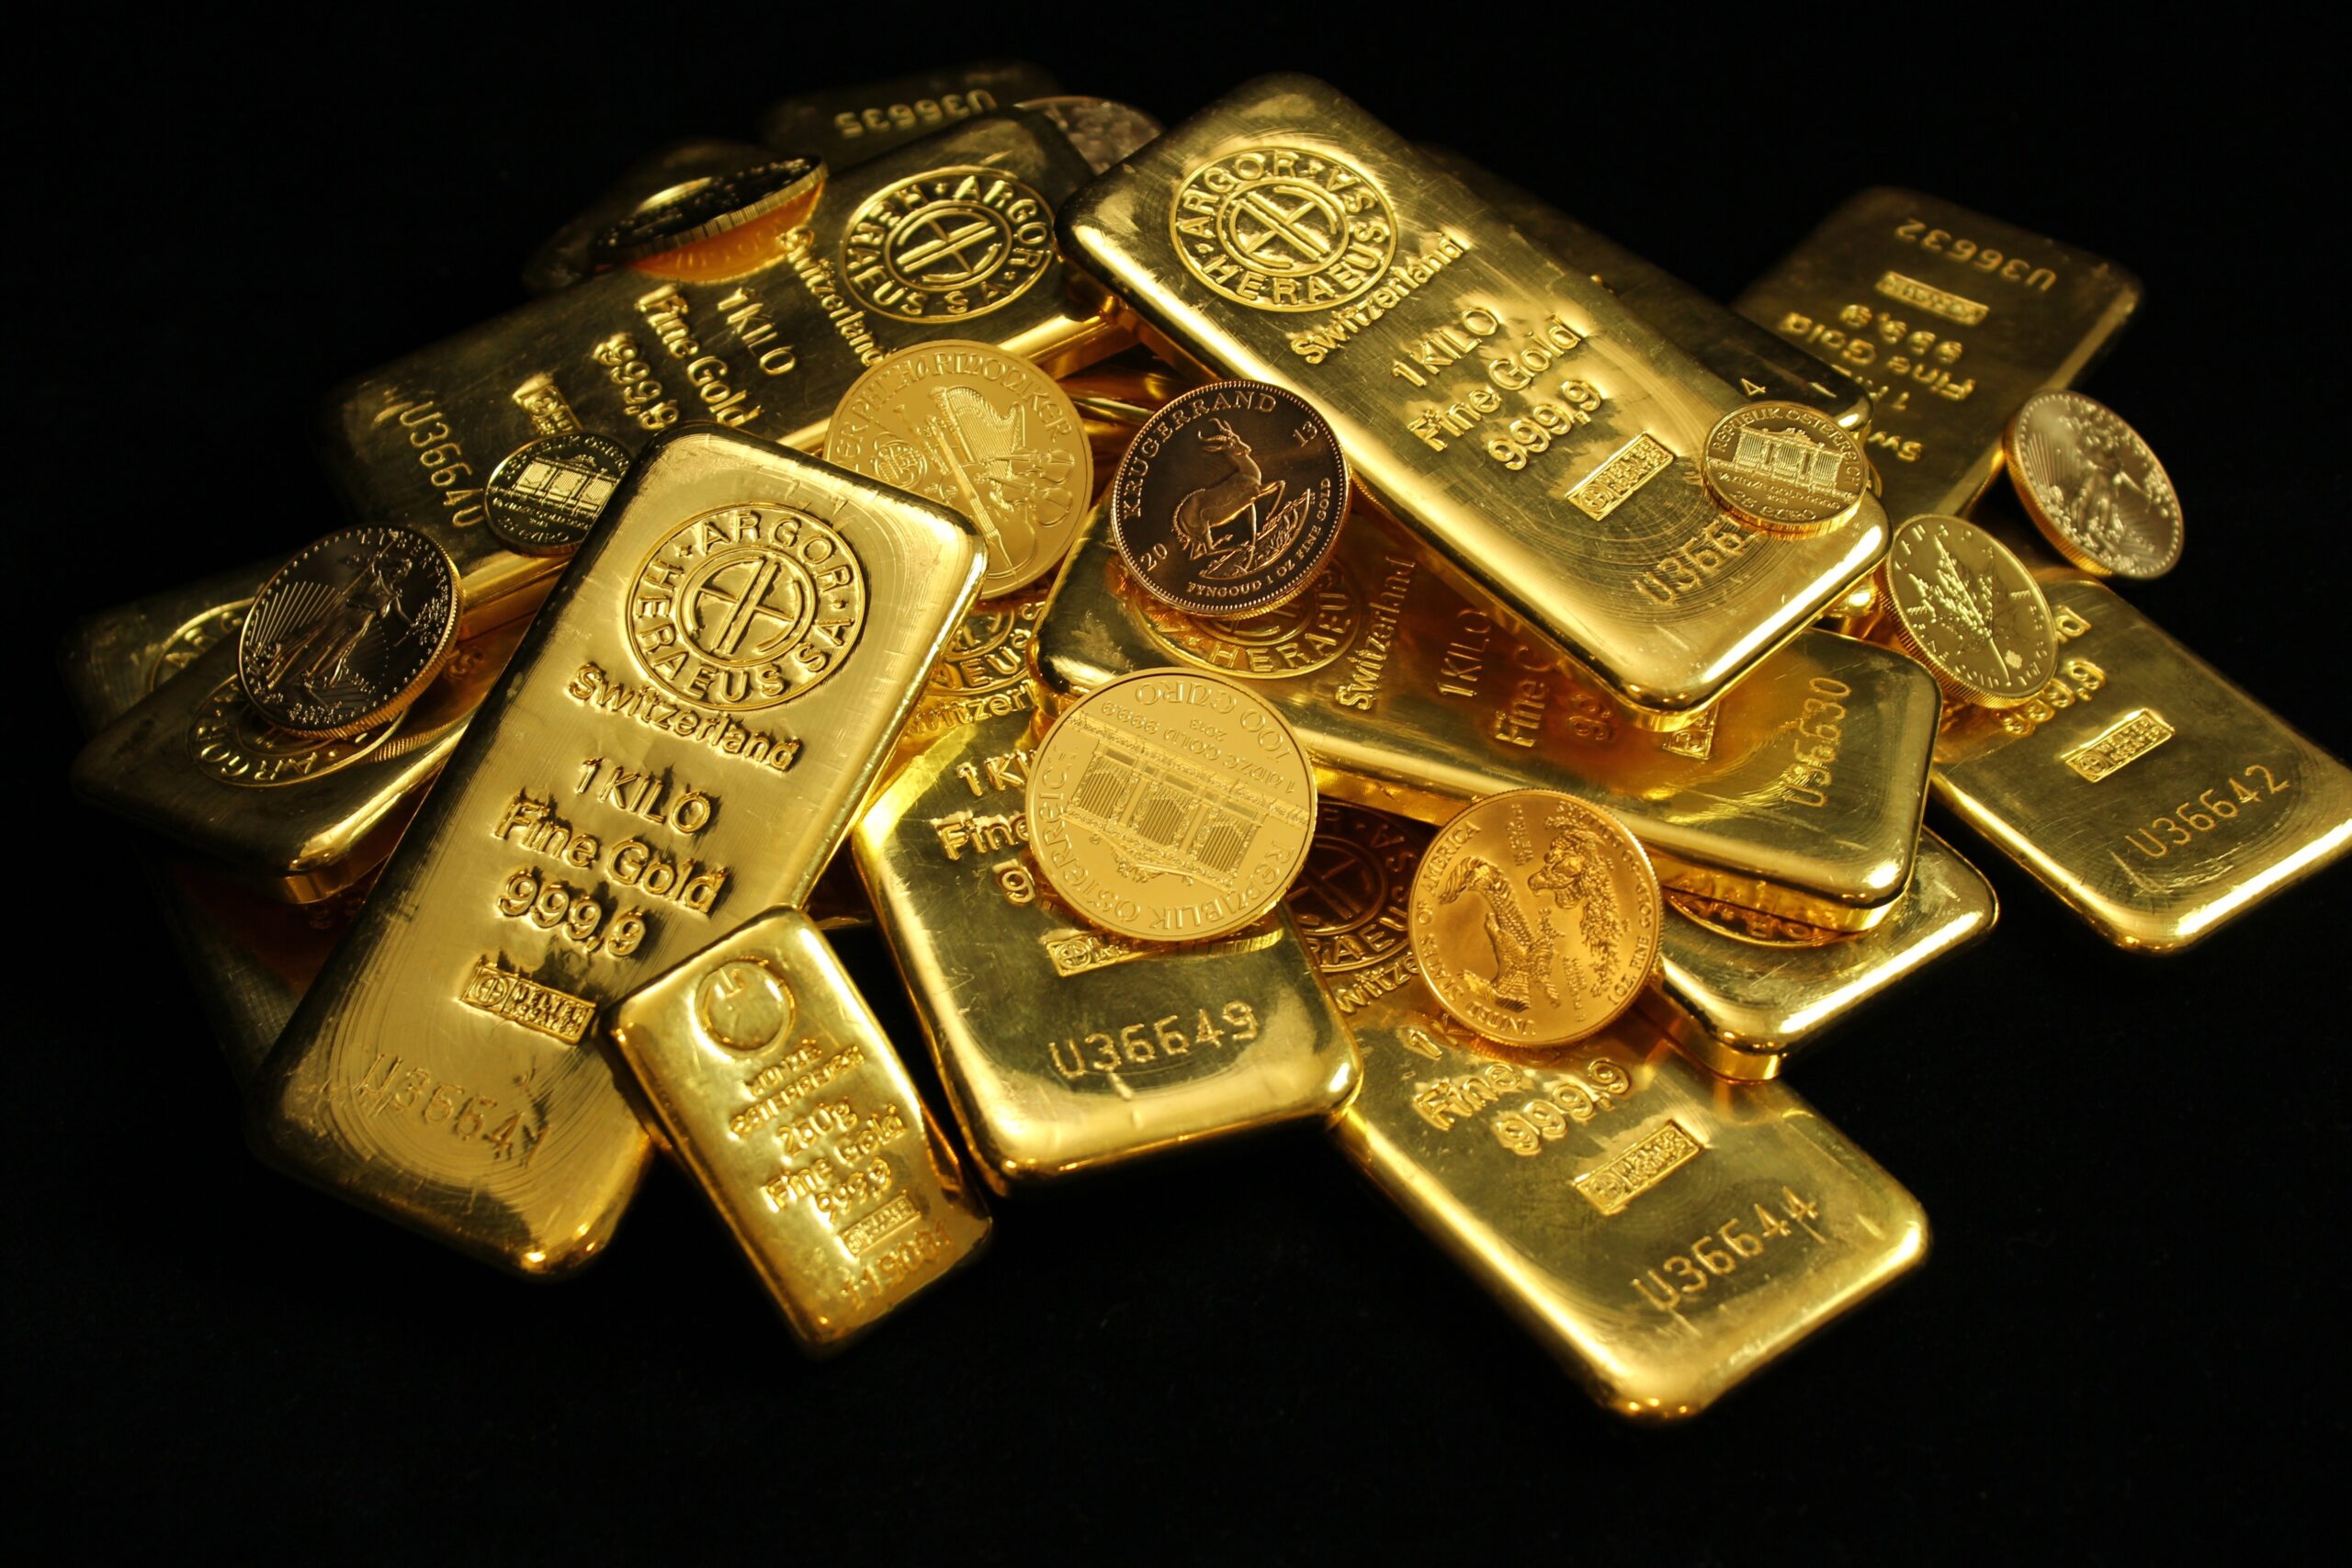 UBS Asset Management har lanserat en fysiskt uppbackad koldioxidkompenserad guldfond med guldtackor som har certifierats som koldioxidneutrala.